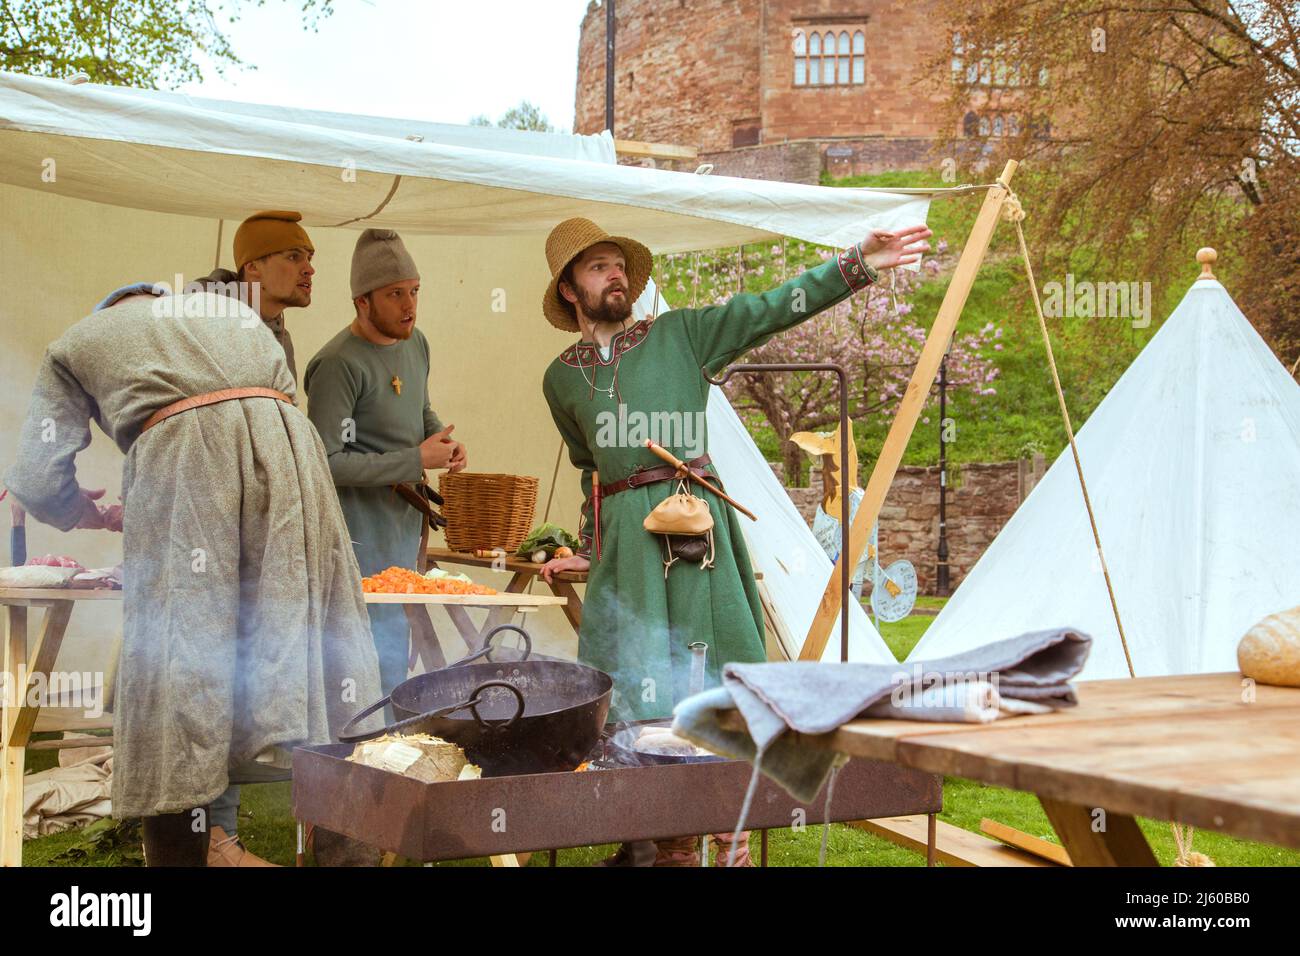 Des amis parlent tout en préparant la nourriture lors d'une reconstitution d'un camp médiéval dans le domaine du château de Tamworth, Angleterre, Royaume-Uni. Banque D'Images